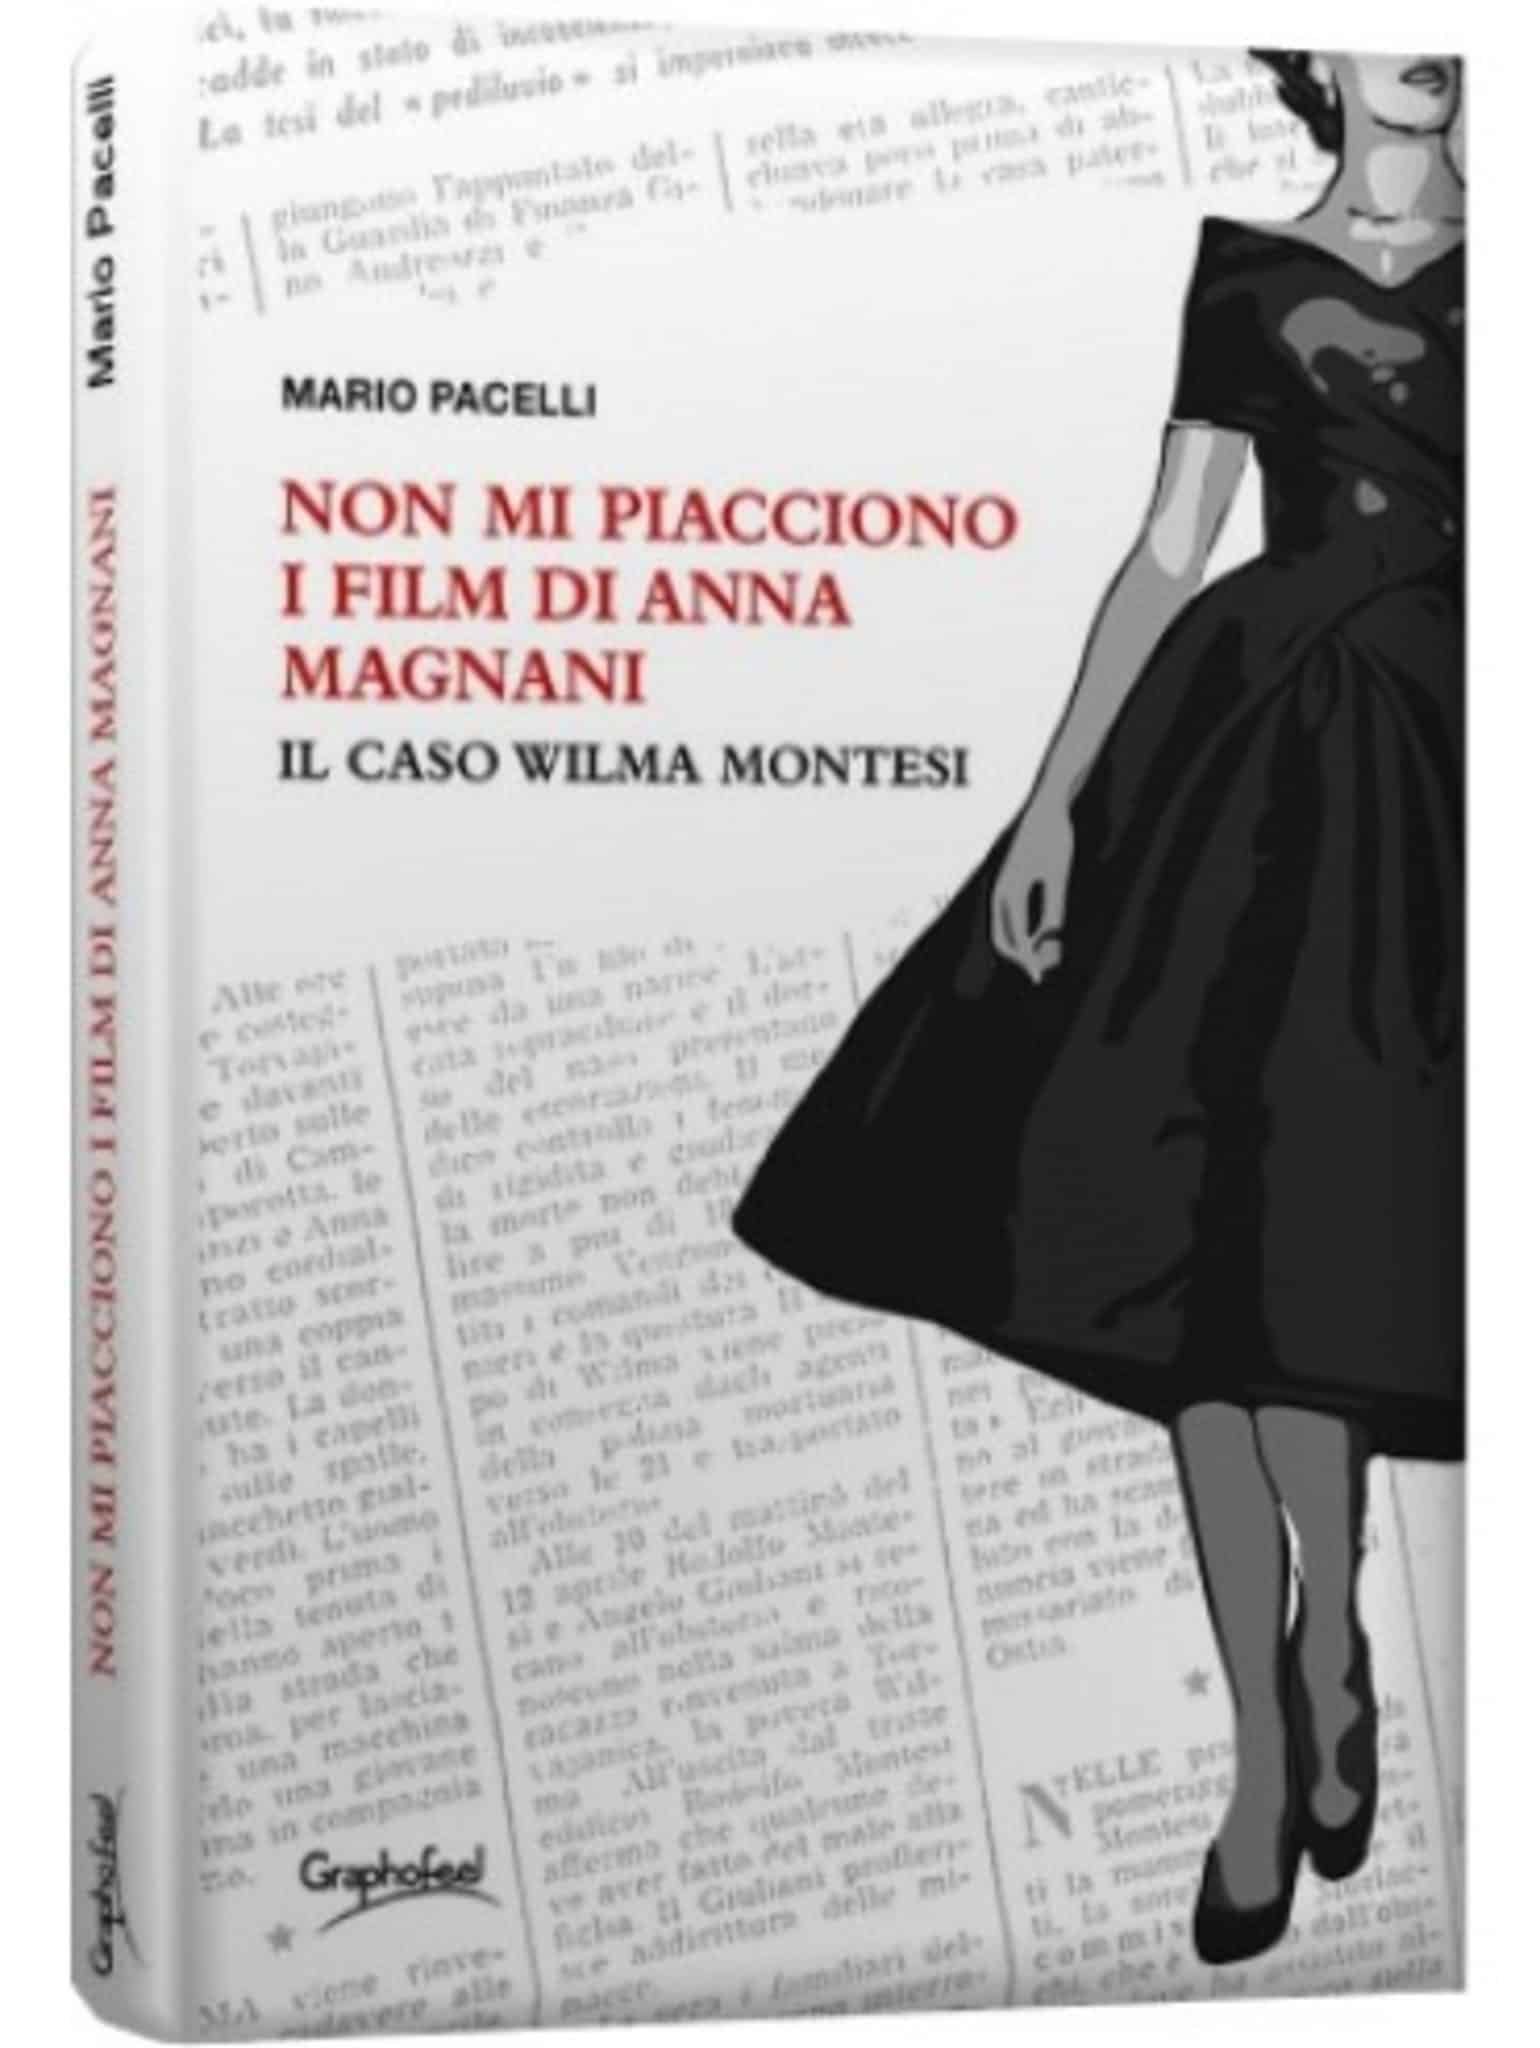 Mario Pacelli: il nuovo libro sul caso Wilma Montesi